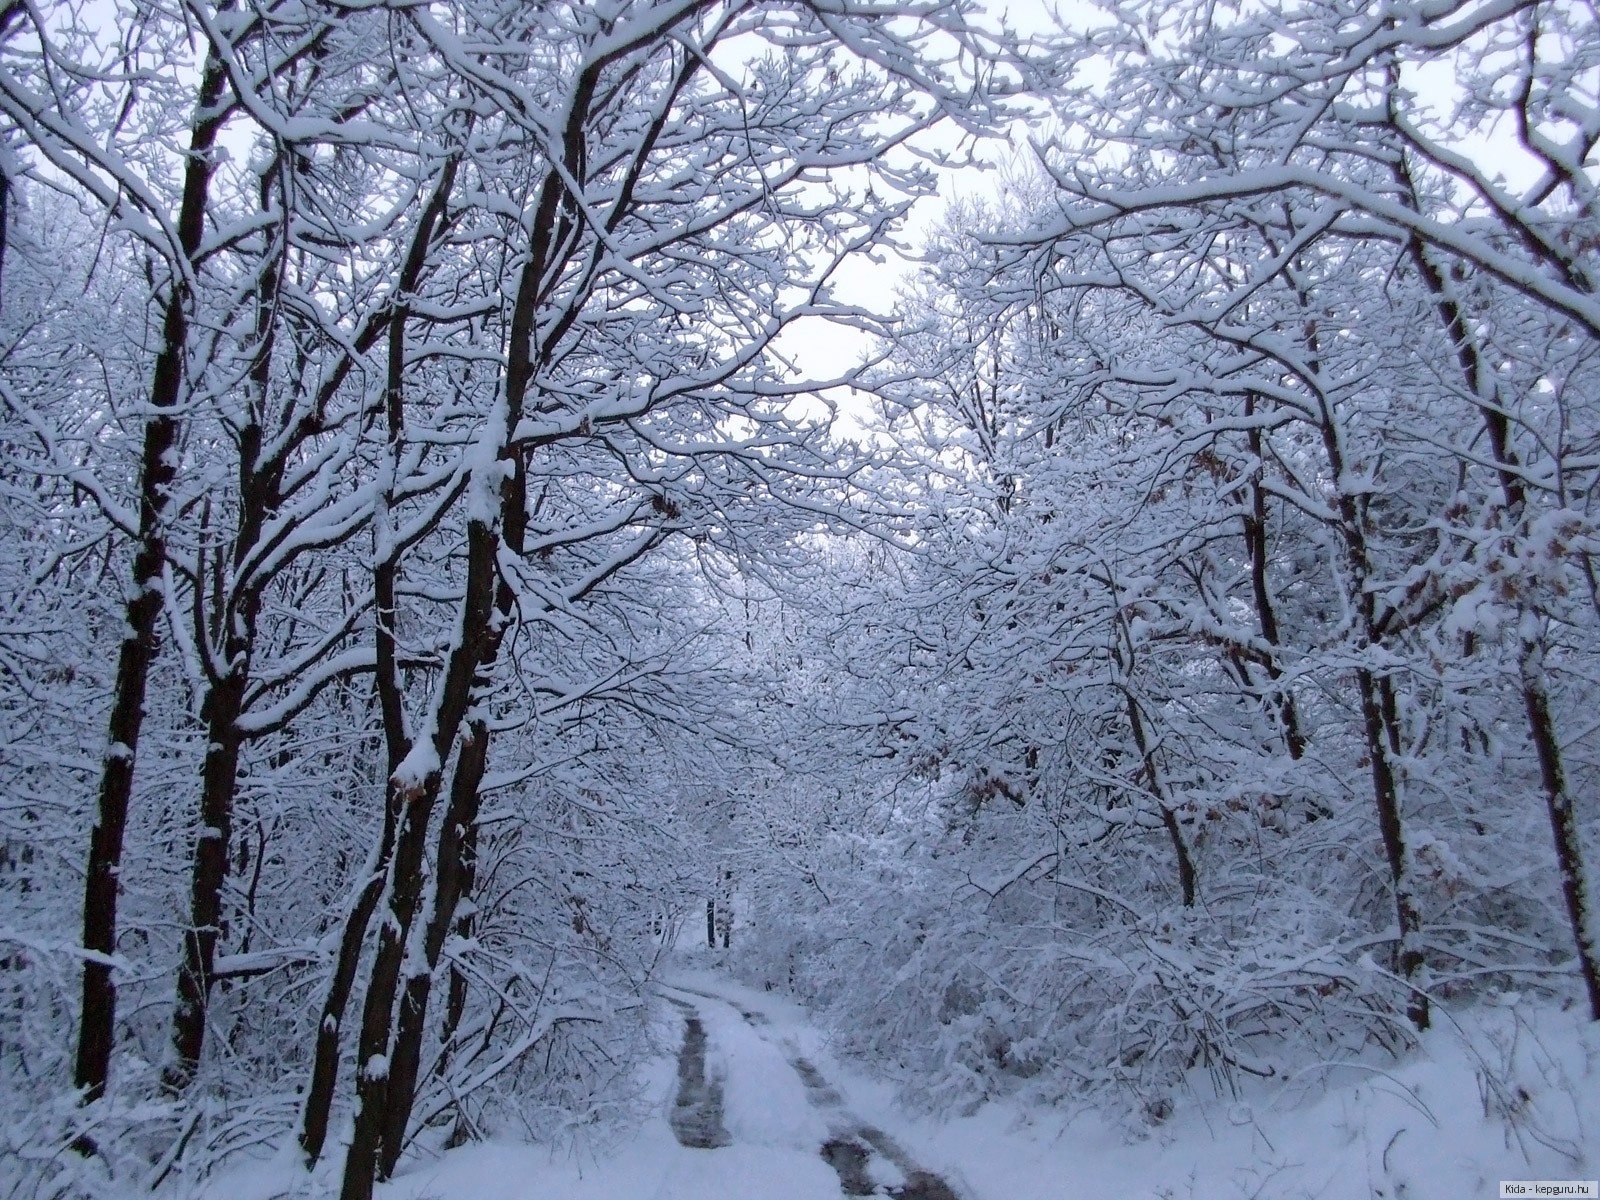 Картинка зима природа для странички в ВК